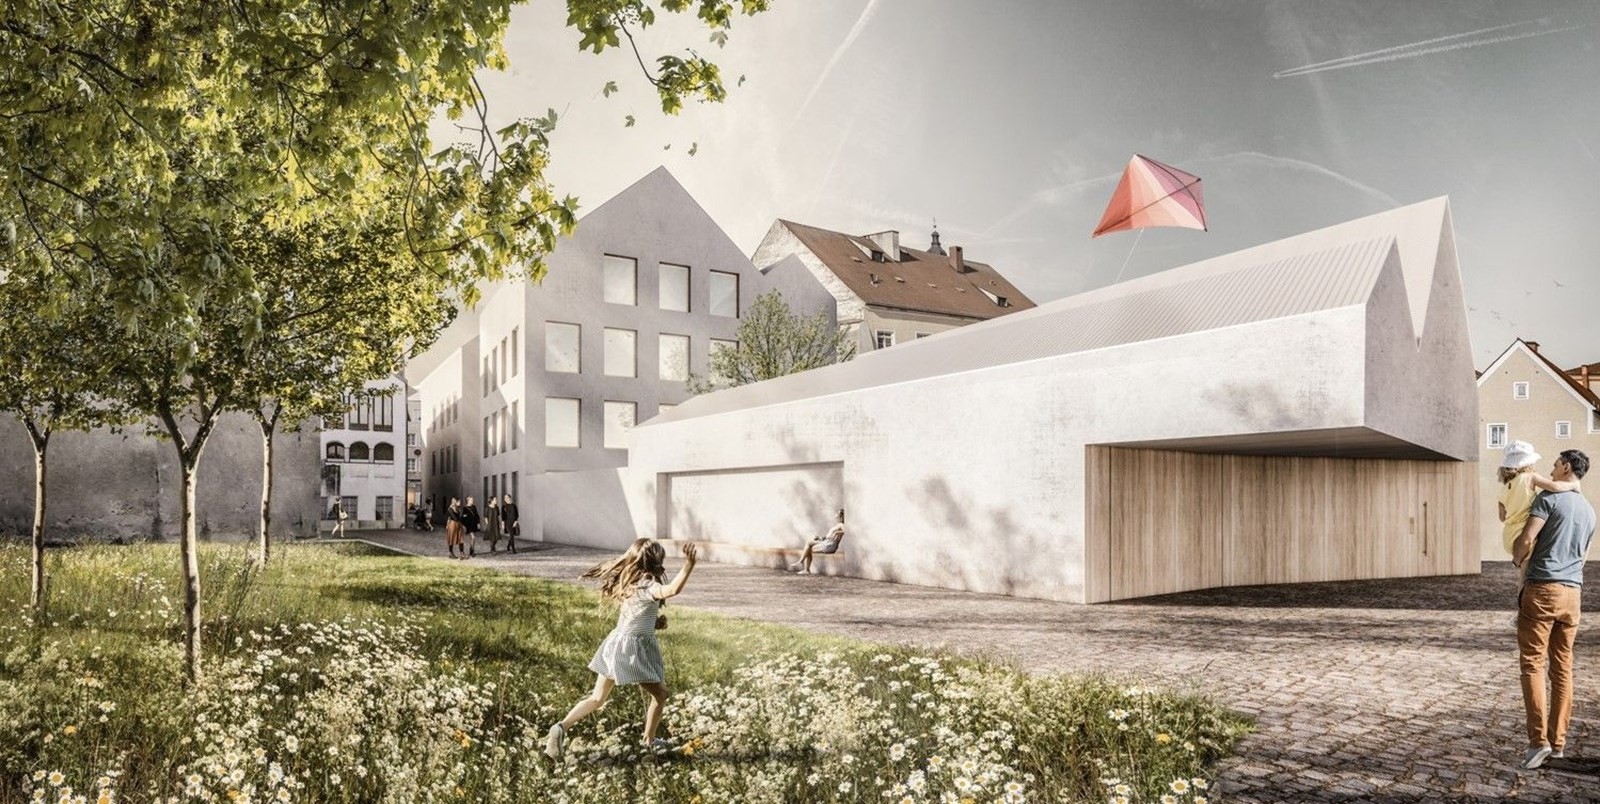 Casa onde Hitler nasceu será transformada em delegacia (Foto: Marte Marte Architects/Divulgação)